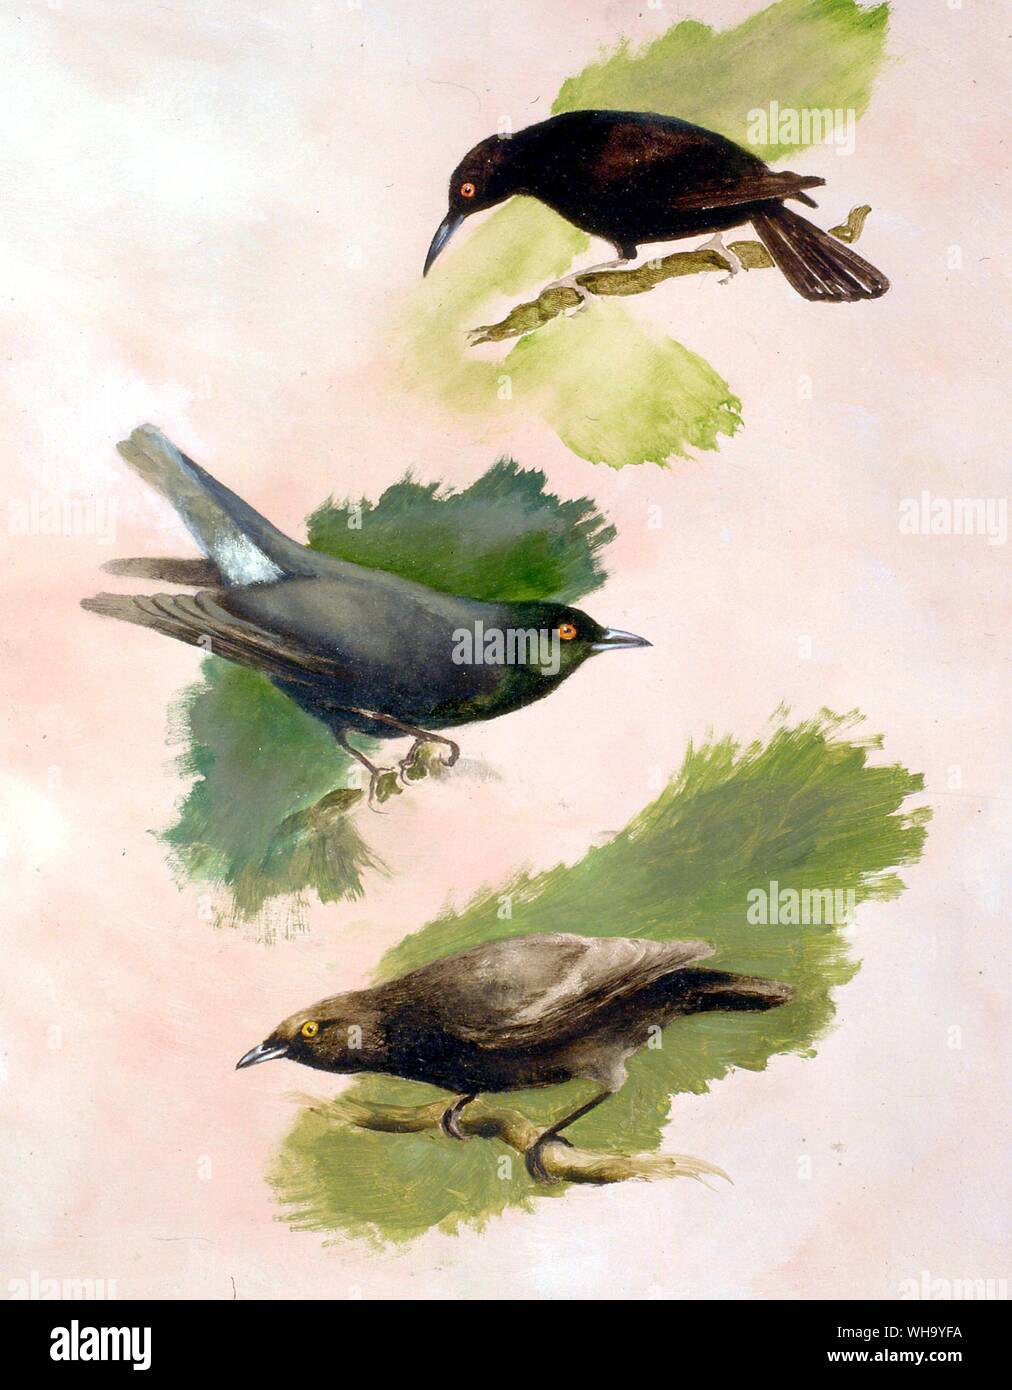 Drei ausgestorben Stare: kusaie Insel Starling (oben), Norfolk und Lord Howe Starling (Mitte), geheimnisvolle Starling (unten). Ölgemälde von Mike. - Länge ofbirds Stockfoto